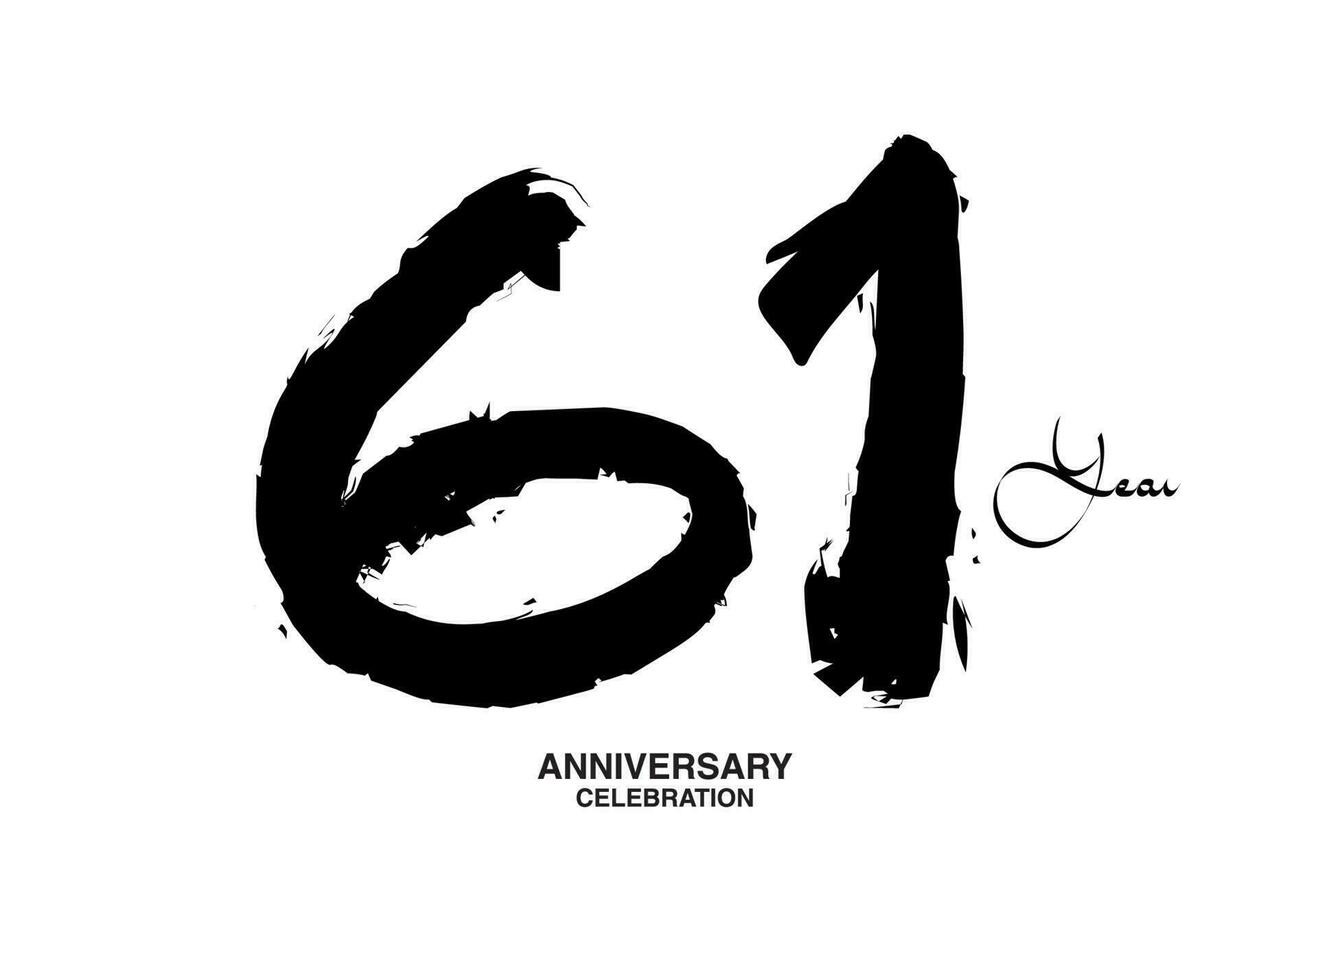 61 Jahre Jahrestag Feier Vektor Vorlage, 61 Nummer Logo Design, 61 .. Geburtstag, schwarz Beschriftung Zahlen Bürste Zeichnung Hand gezeichnet skizzieren, schwarz Nummer, Jahrestag Vektor Illustration